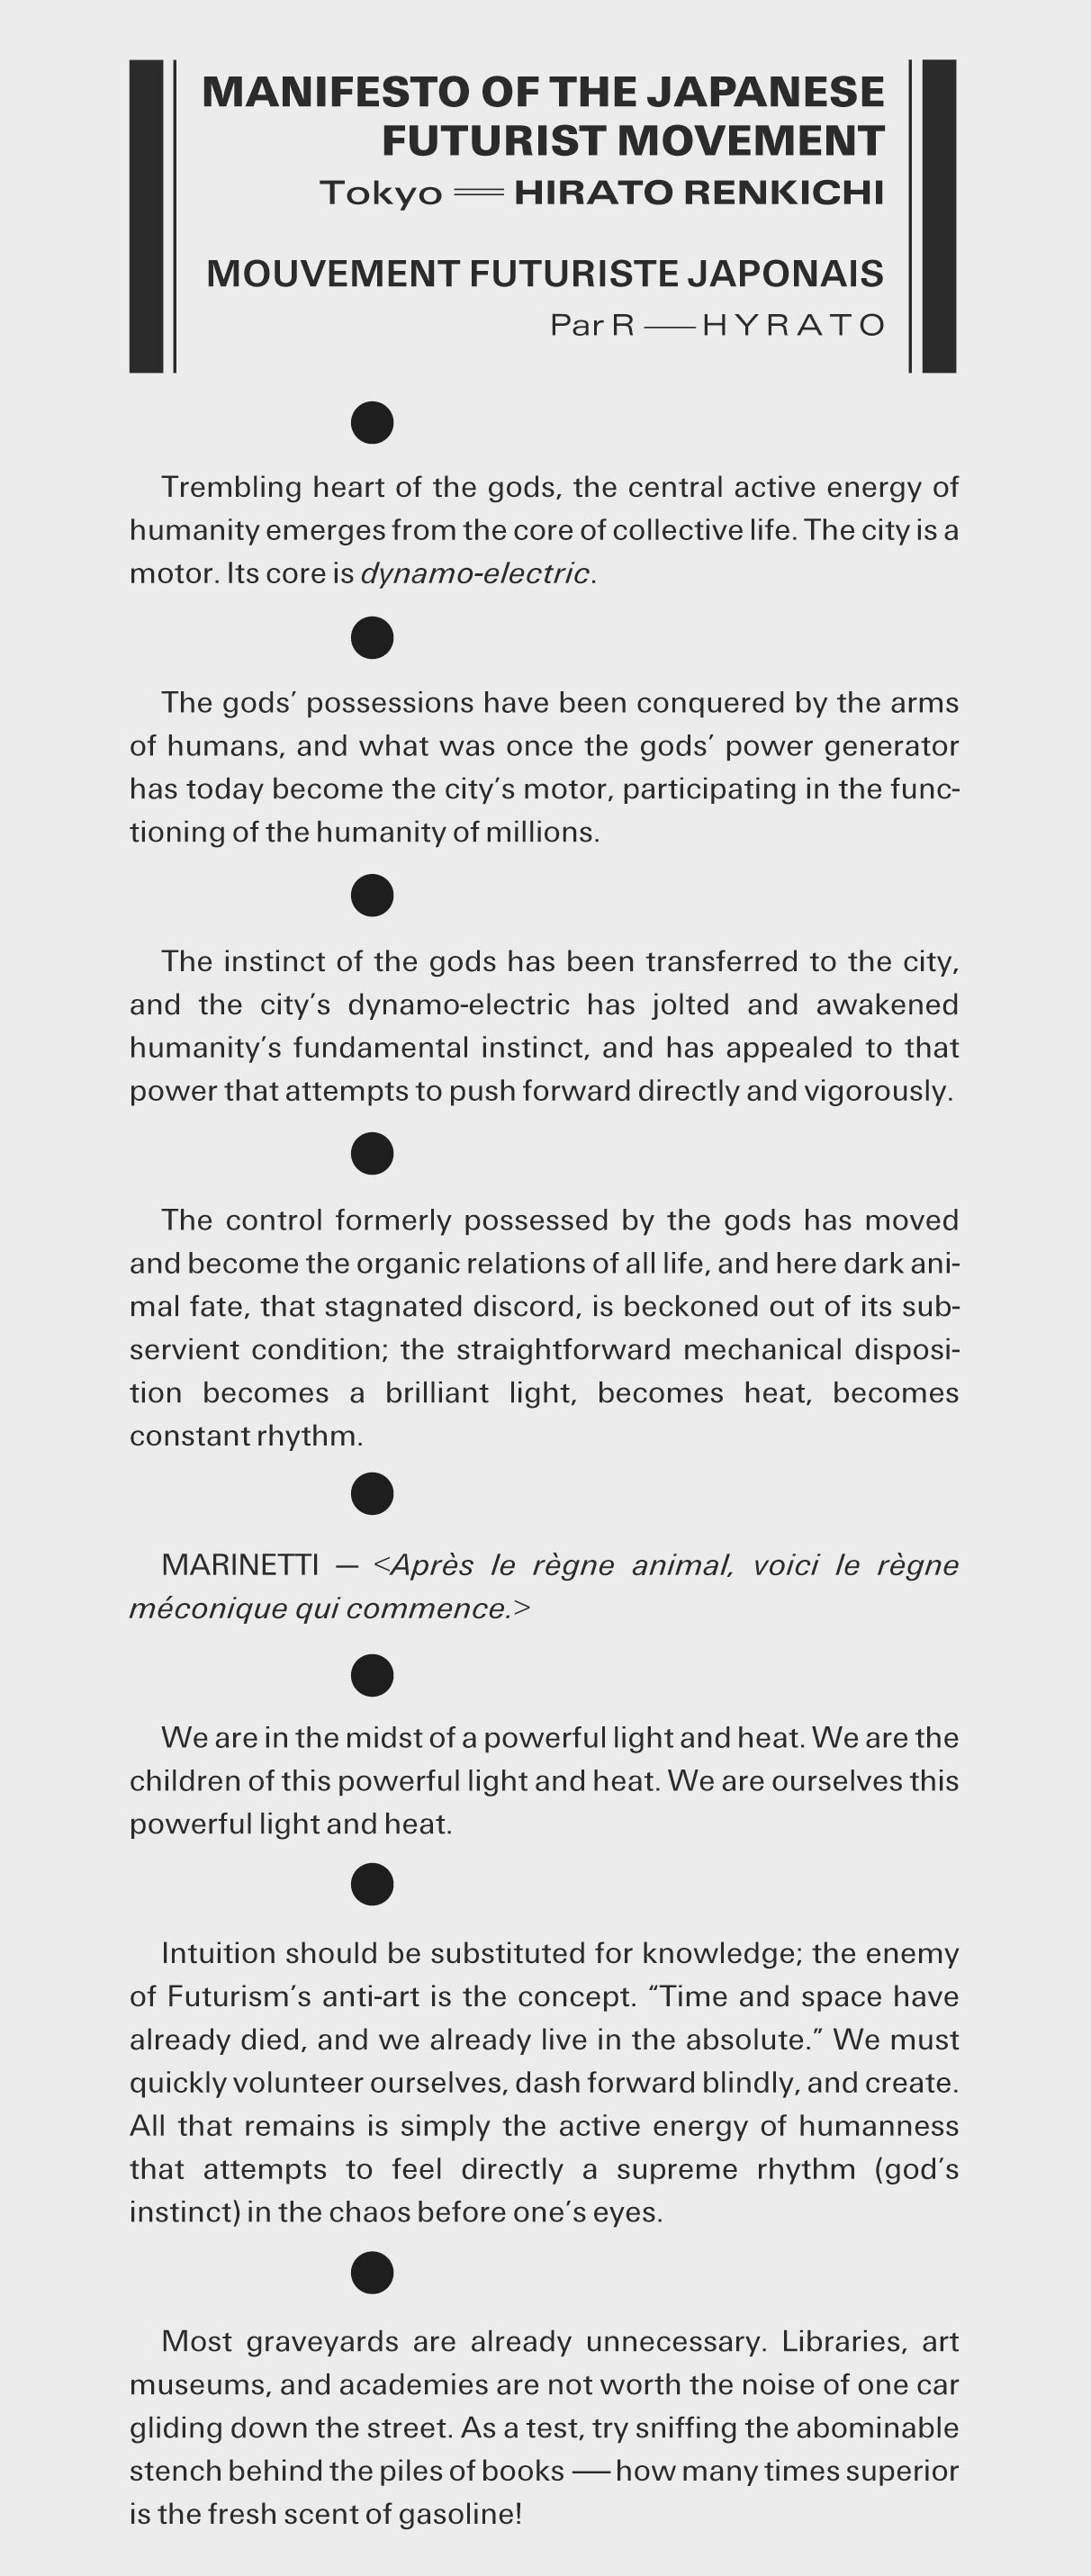 Japanese Futurism manifesto, translated into English.